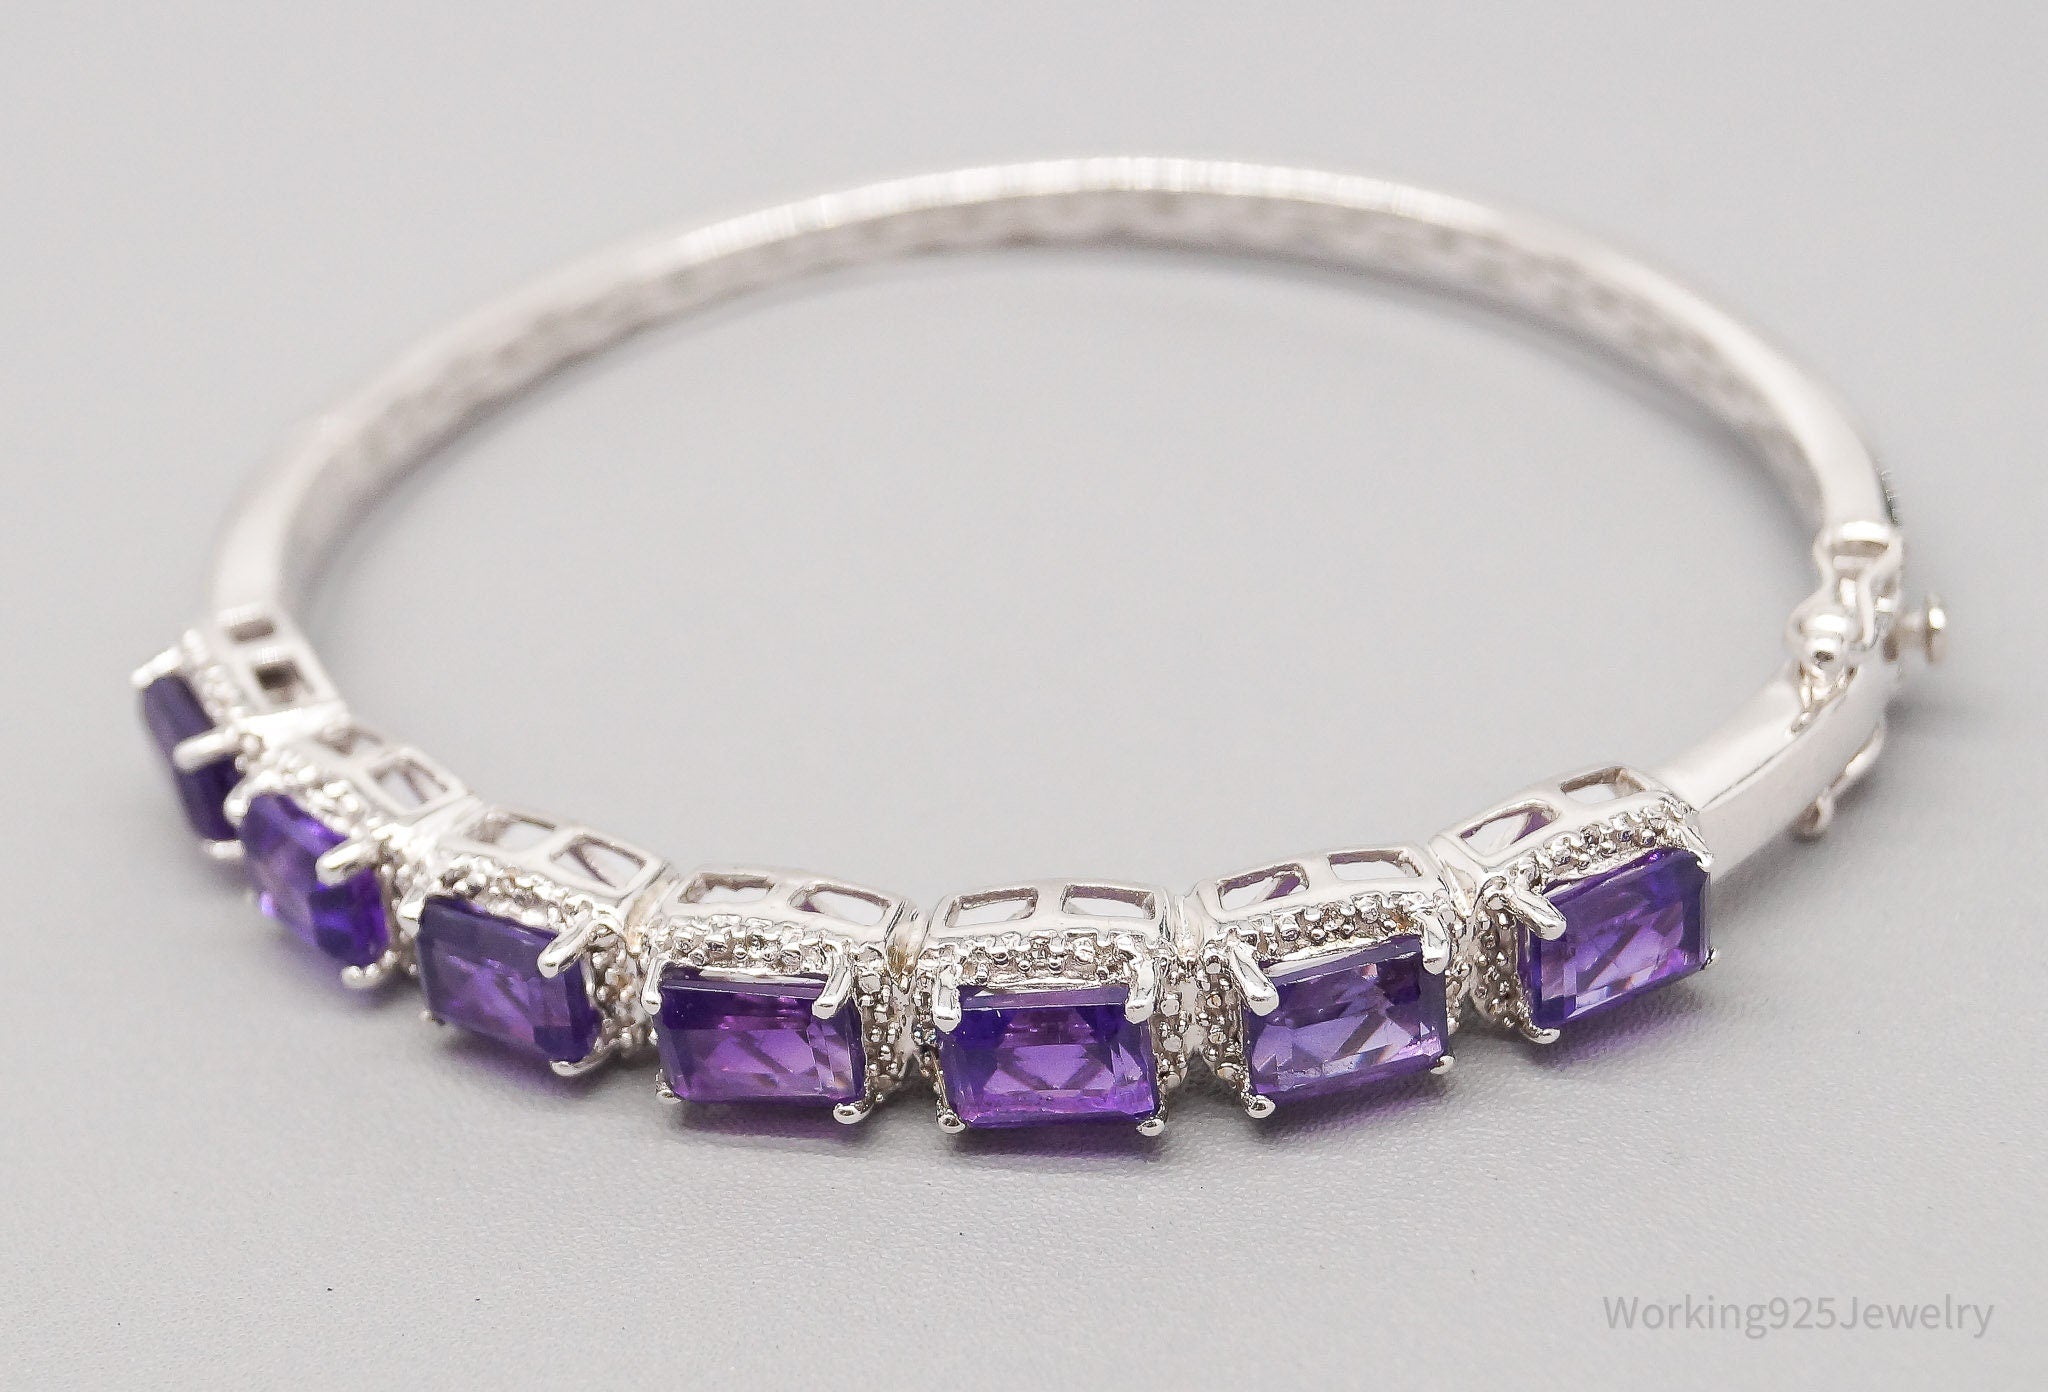 JTV TGGC Purple Amethyst & White Topaz Sterling Silver Bracelet - 6 7/8"